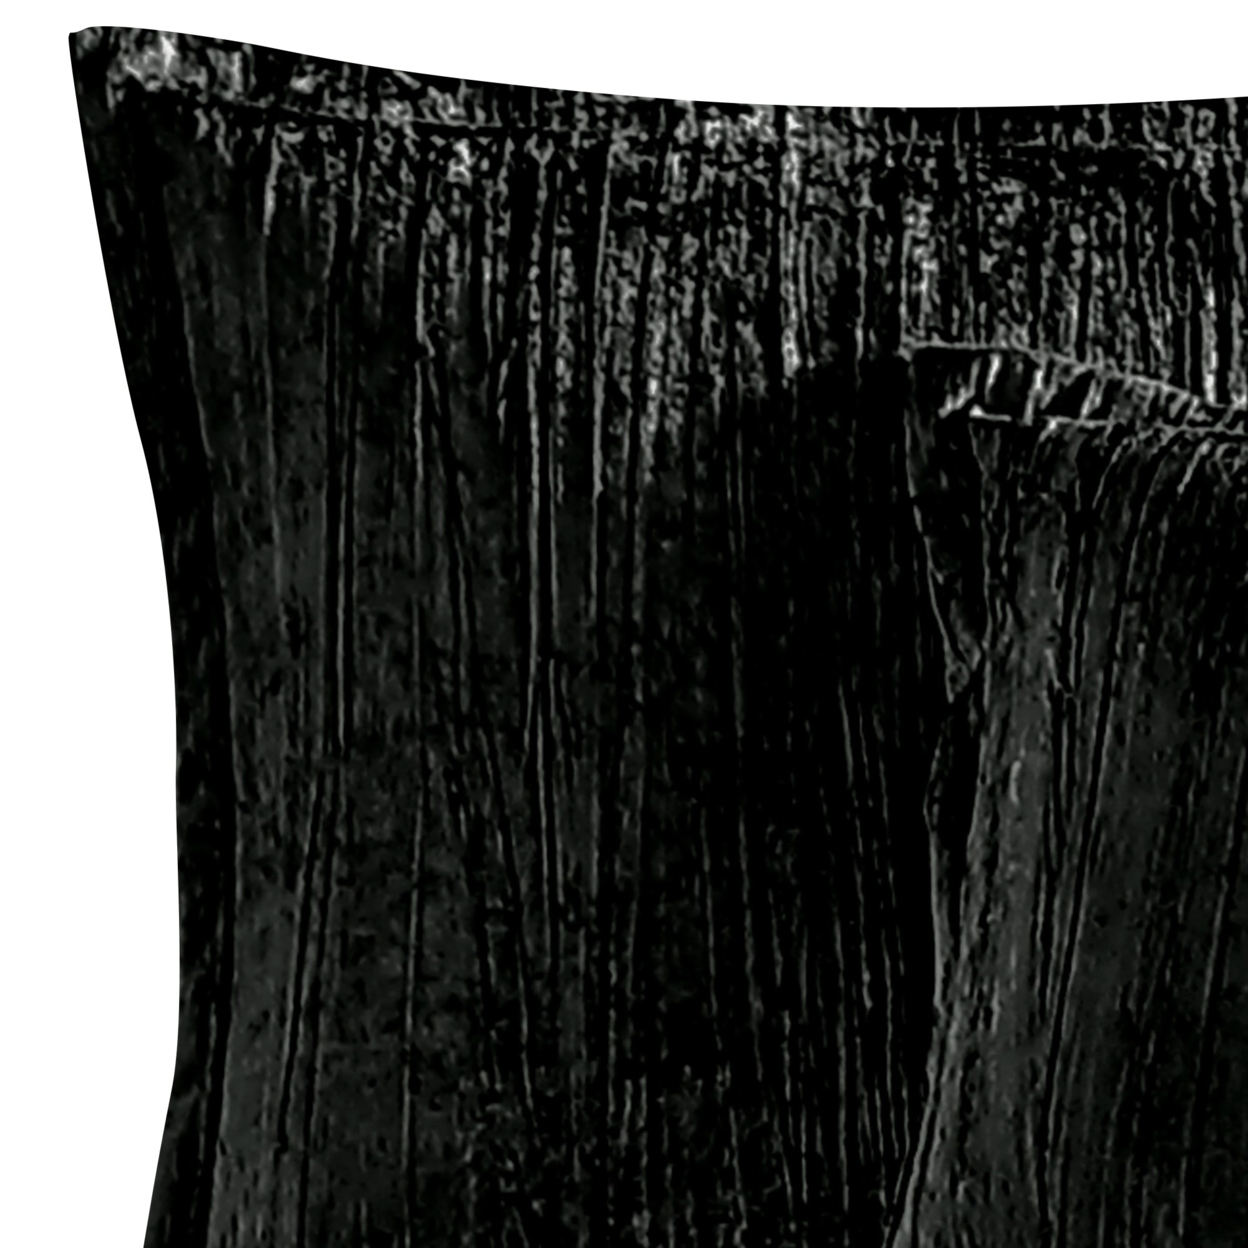 Jay 7 Piece King Comforter Set, Polyester Velvet, Deluxe Texture Black- Saltoro Sherpi